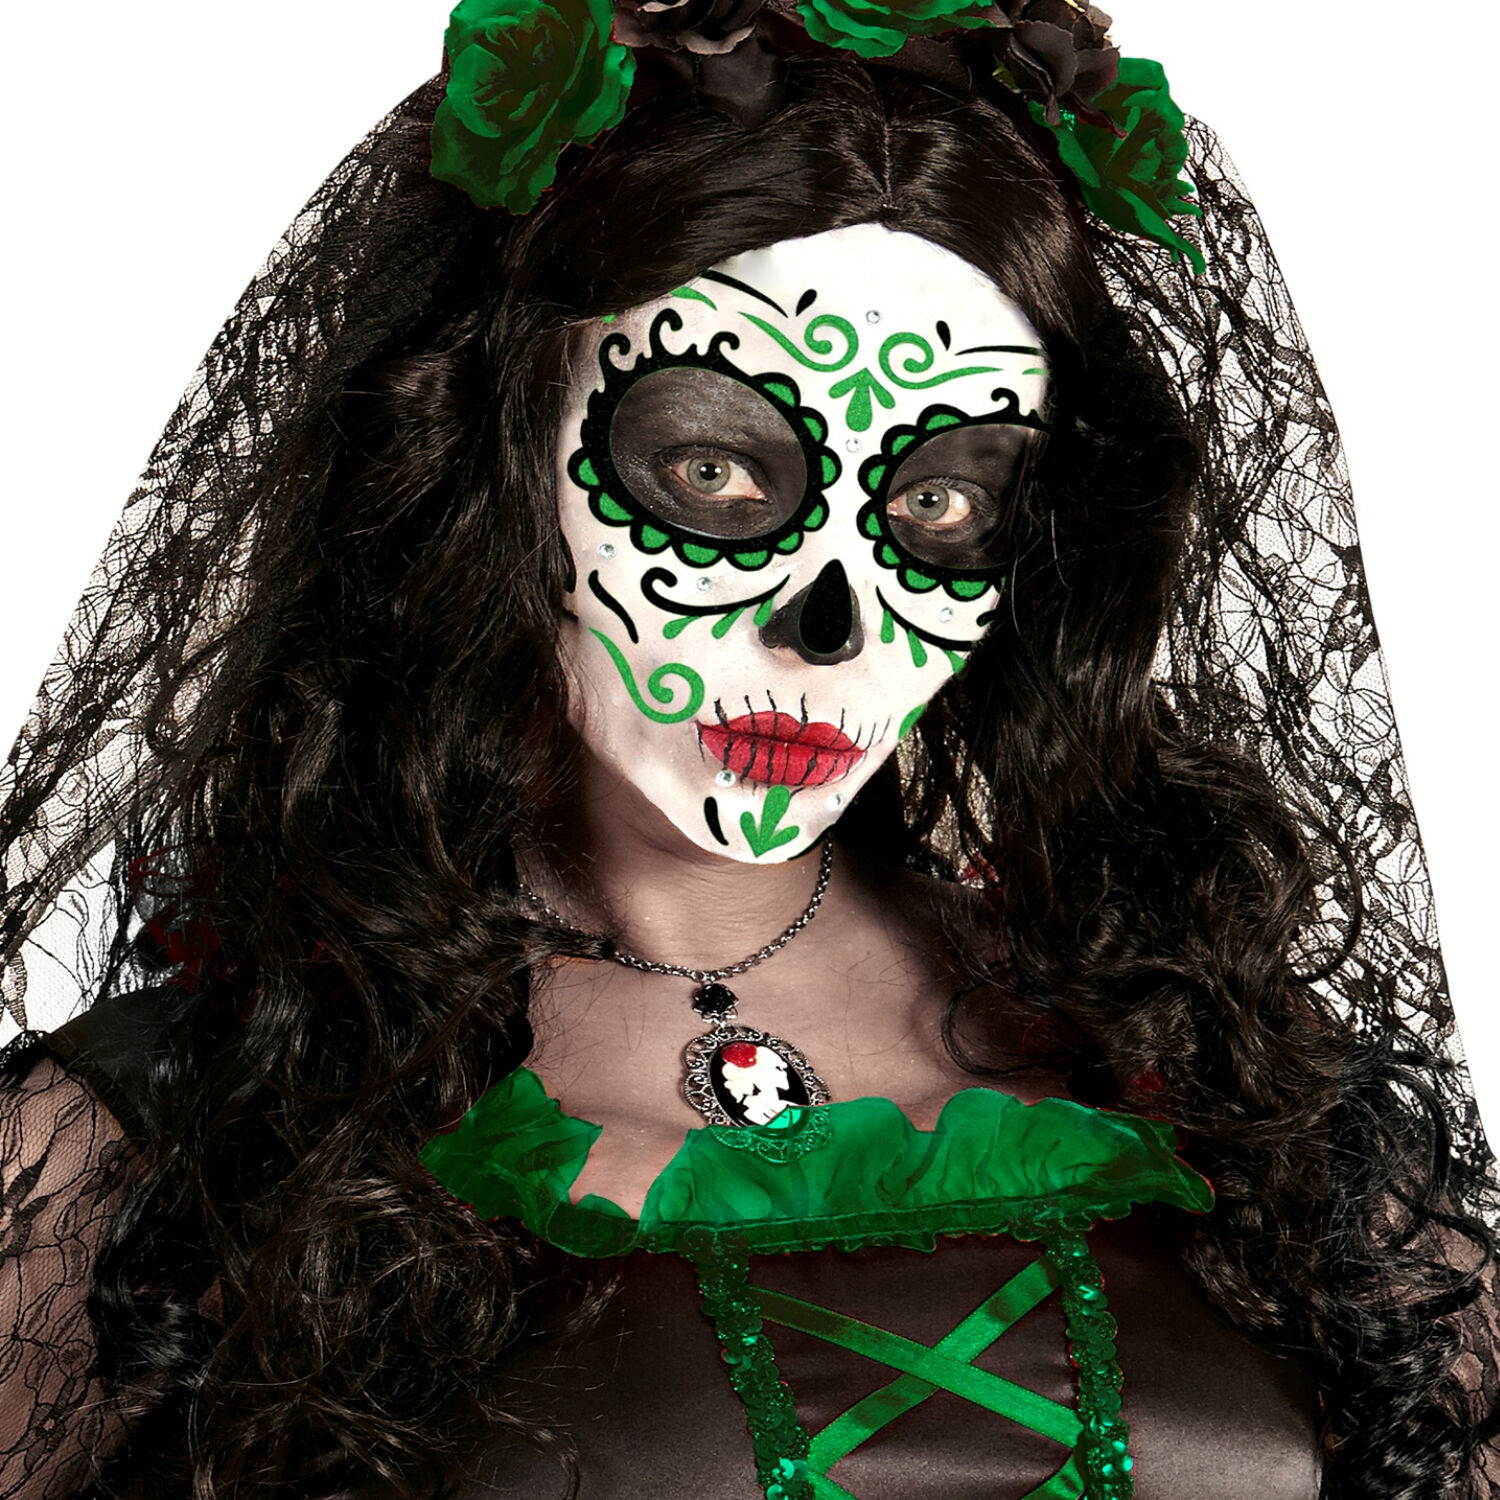 NEU Gesichts-Tattoos / Aufkleber Halloween Tag der Toten, grün, glitzernd, selbstklebend Bild 2